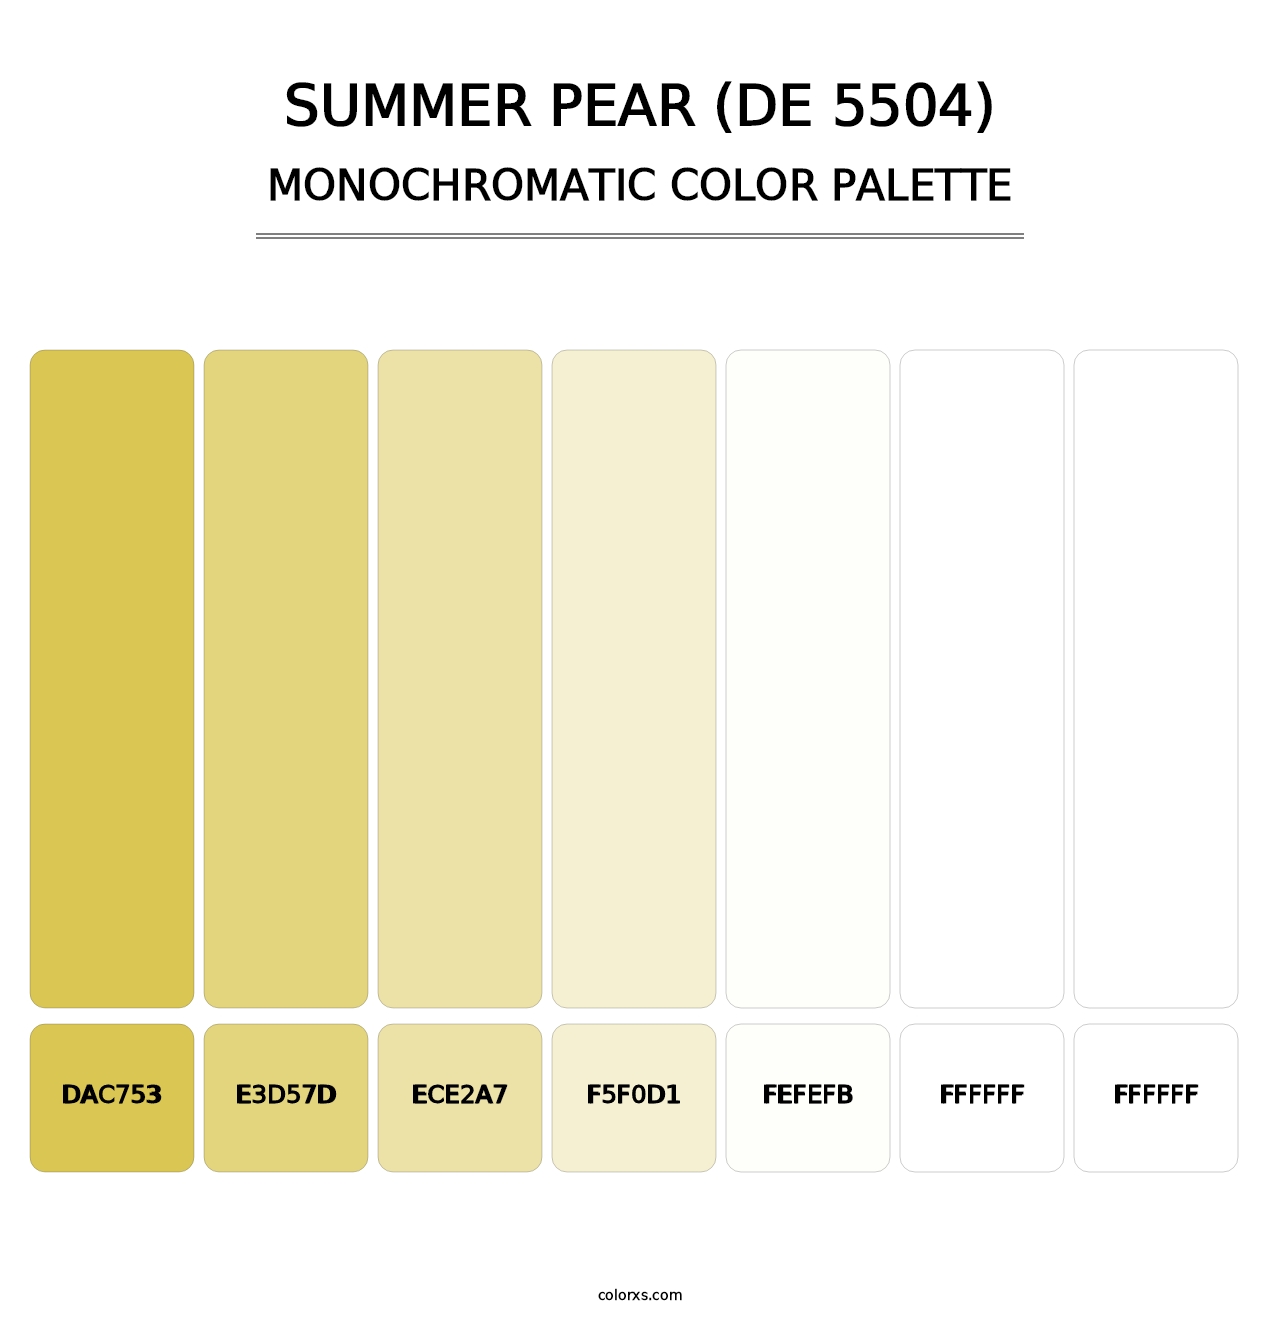 Summer Pear (DE 5504) - Monochromatic Color Palette